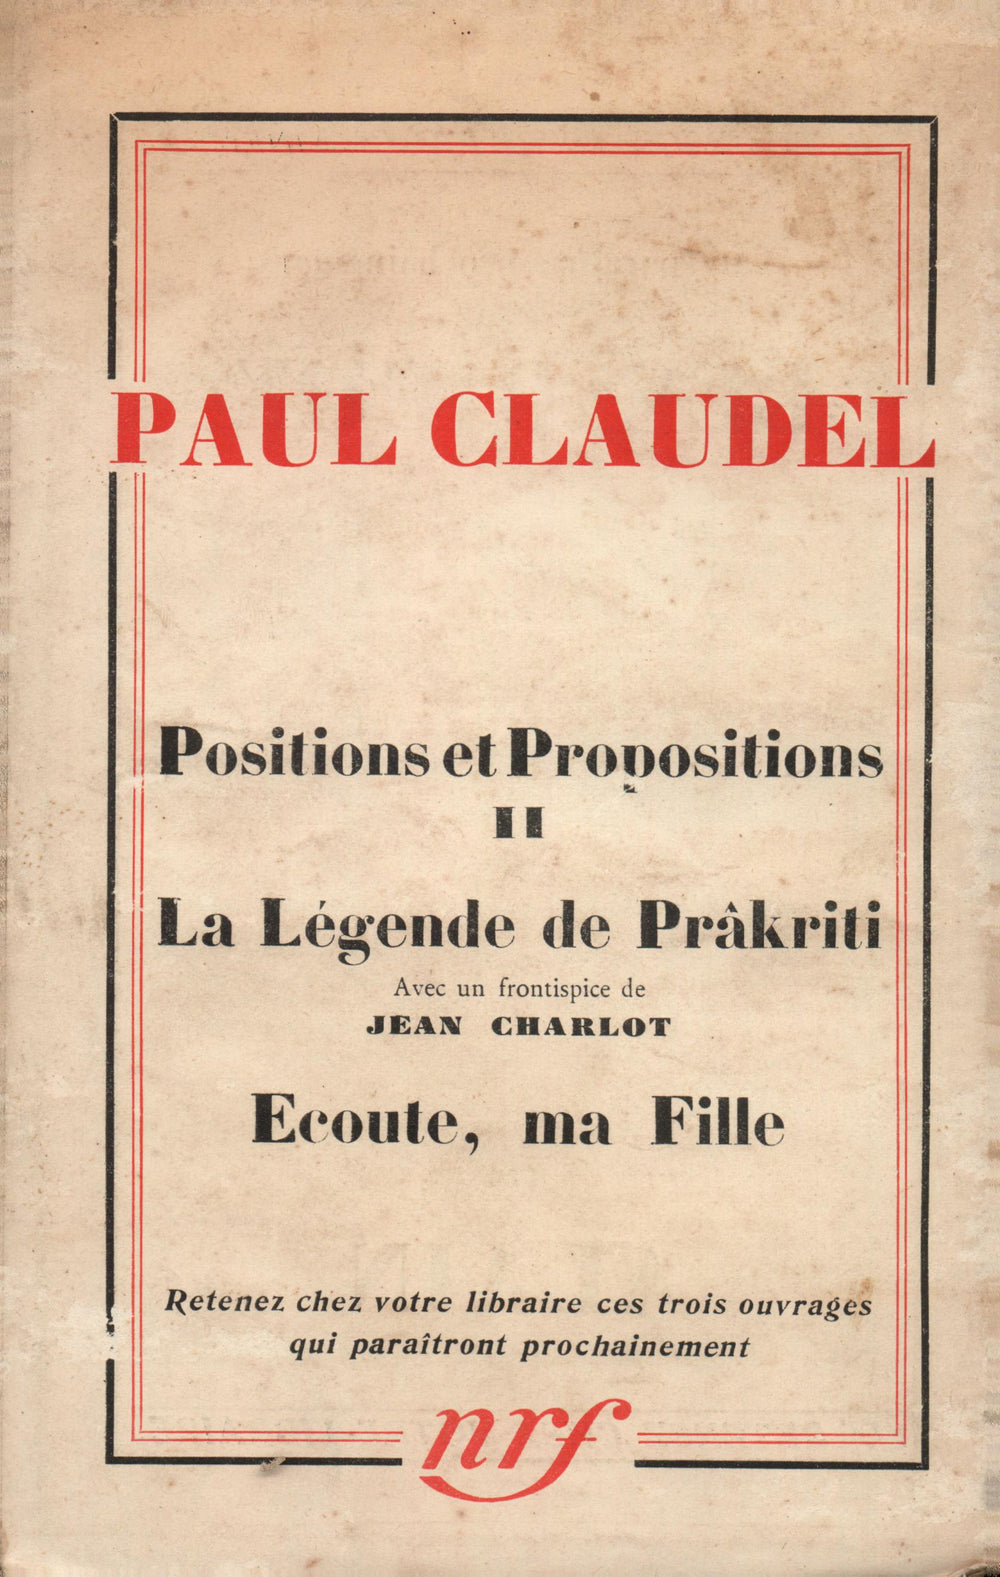 La Nouvelle Revue Française N° 247 (Avril 1934)